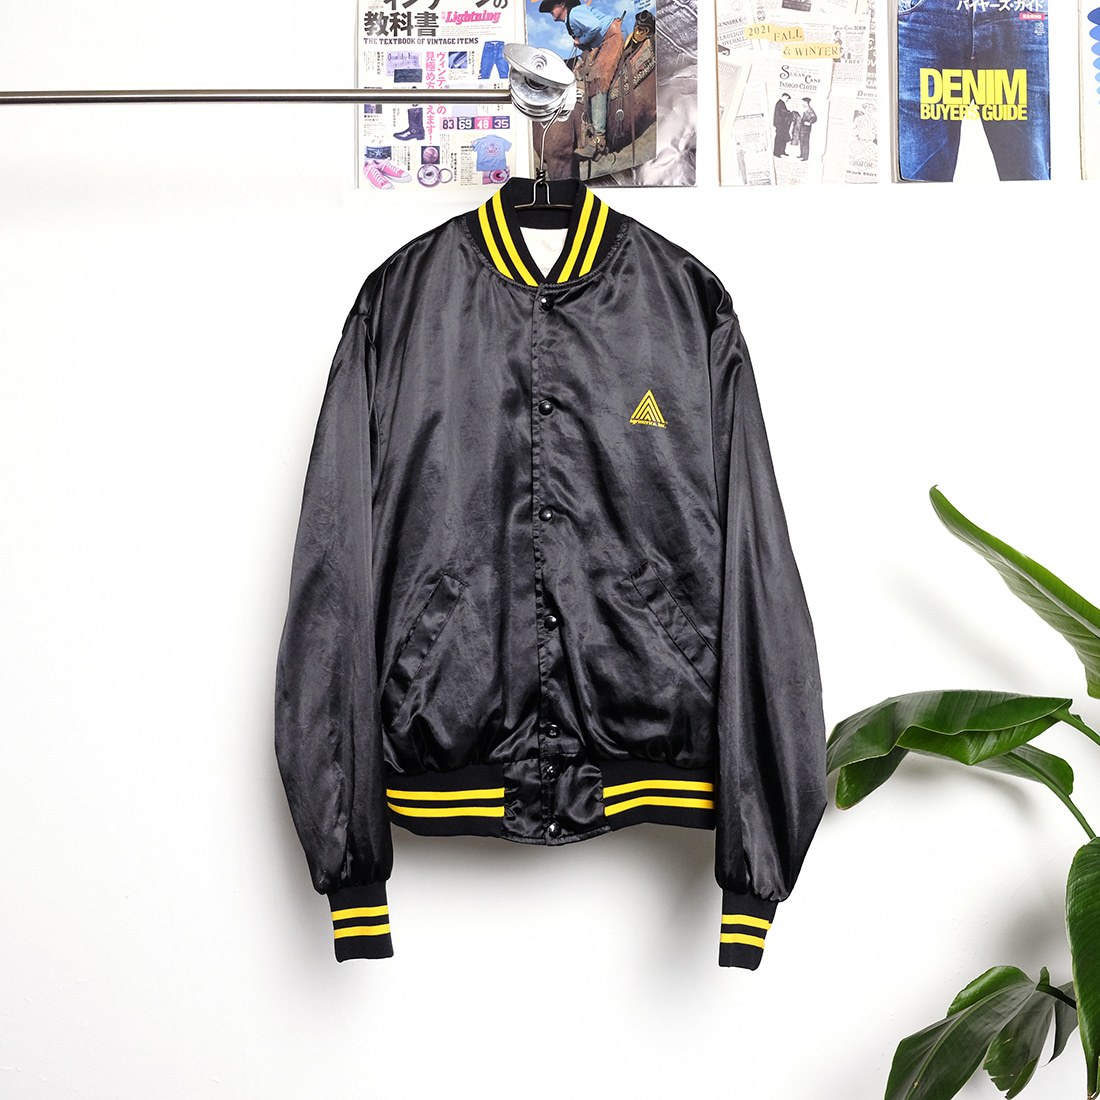 커스텀스포츠웨어 / Made in usa  VTG custom sportswear by sales guides inc bomber jacket